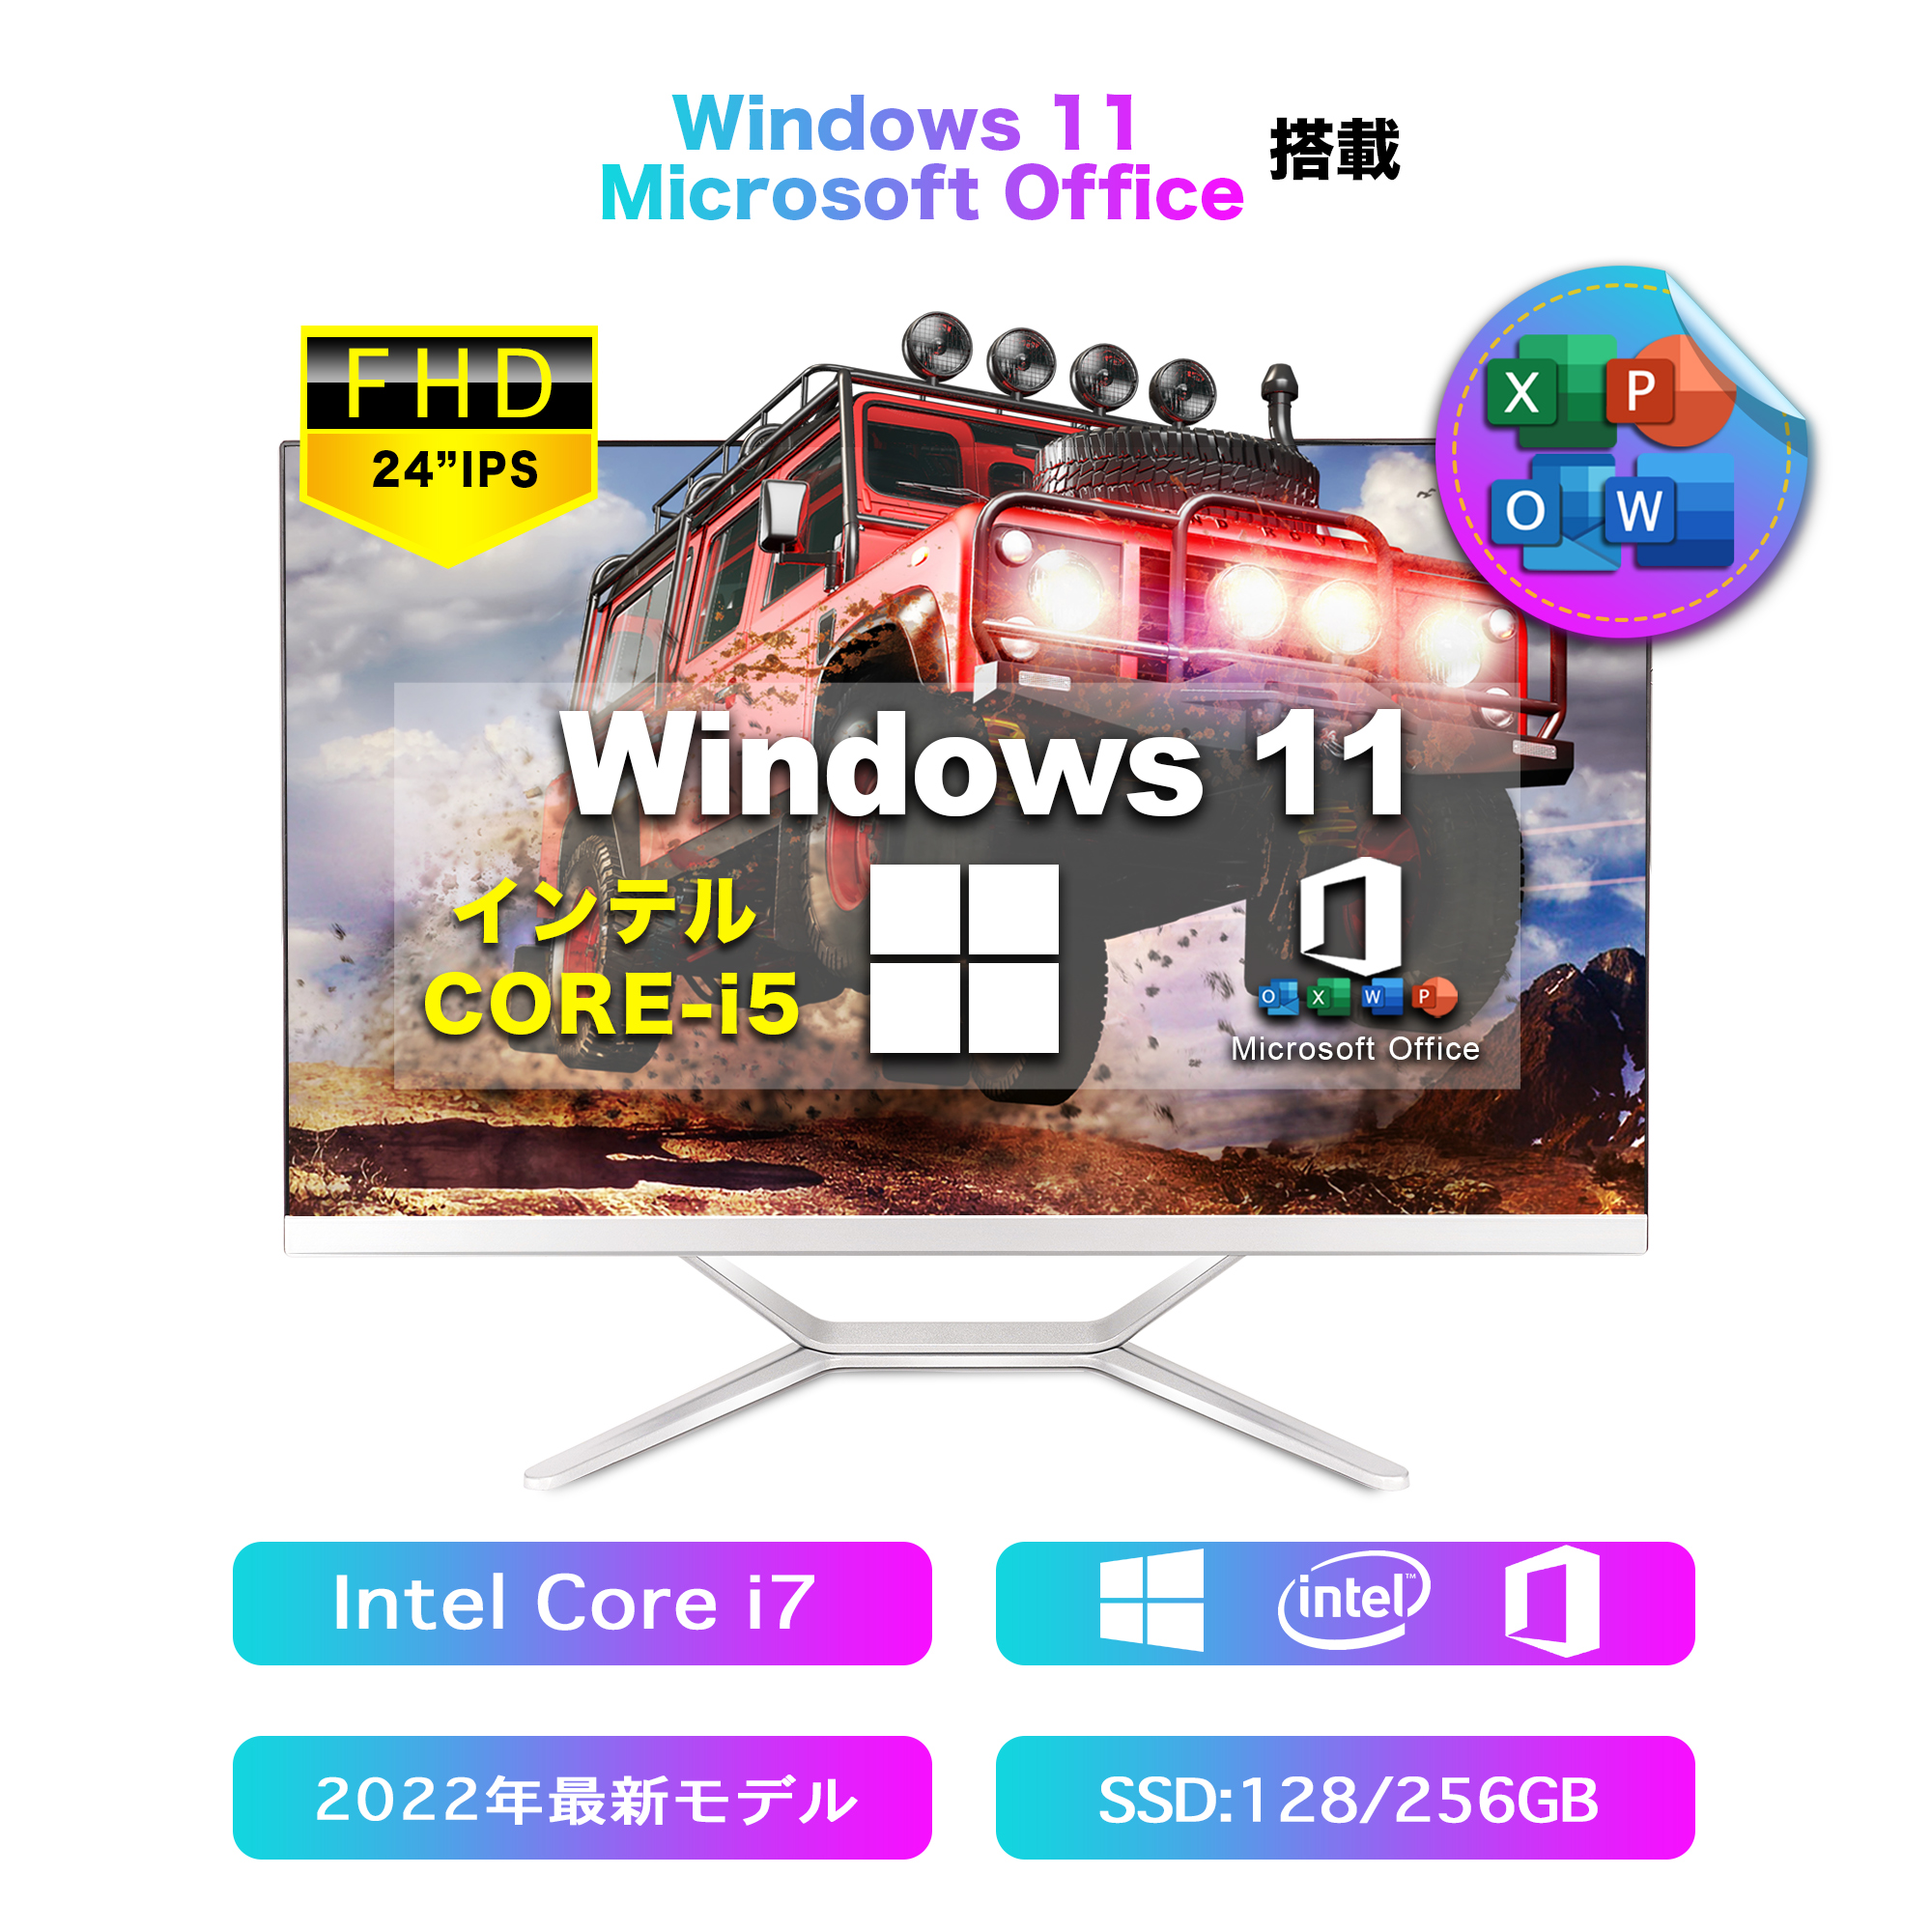 ☆大人気商品大人気商品☆新品 Dobios Win11搭載 一体型デスクトップ PC Windows11搭載 Microsoft Office搭載  24型 Core I5 2420M メモリー8GB SSD128GB 新品キーボードとマウス付属 Windowsデスクトップ 